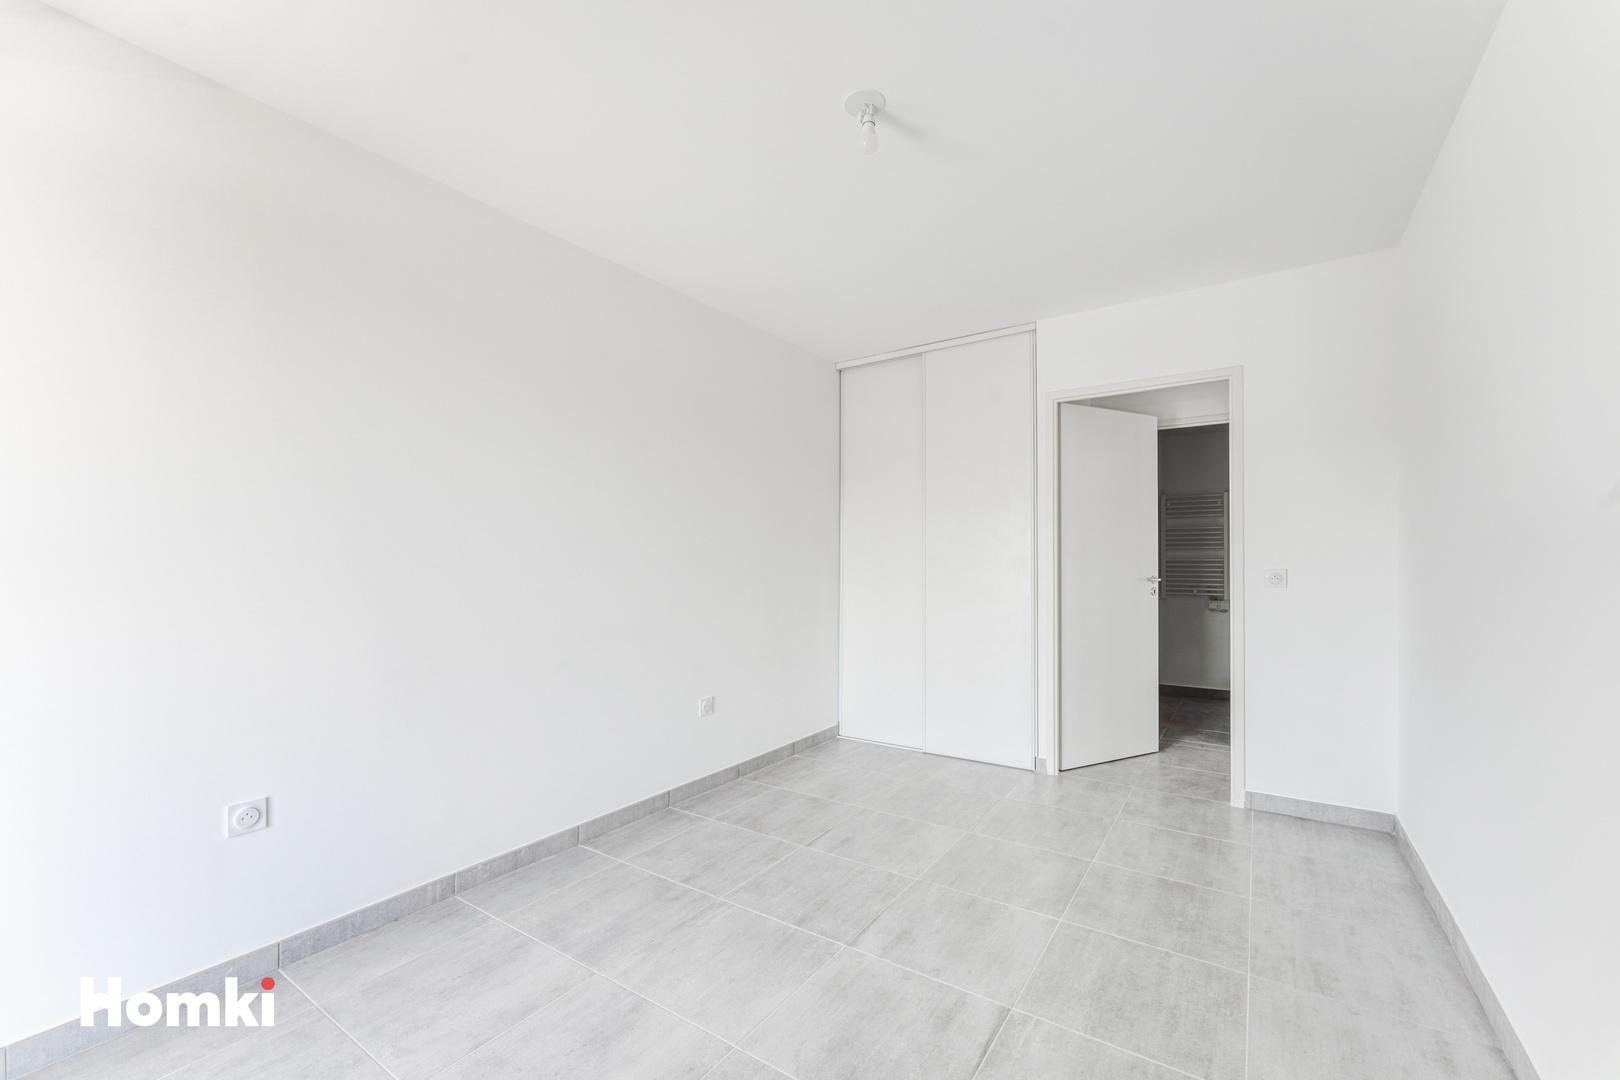 Homki - Vente Appartement  de 66.0 m² à Marseille 13008